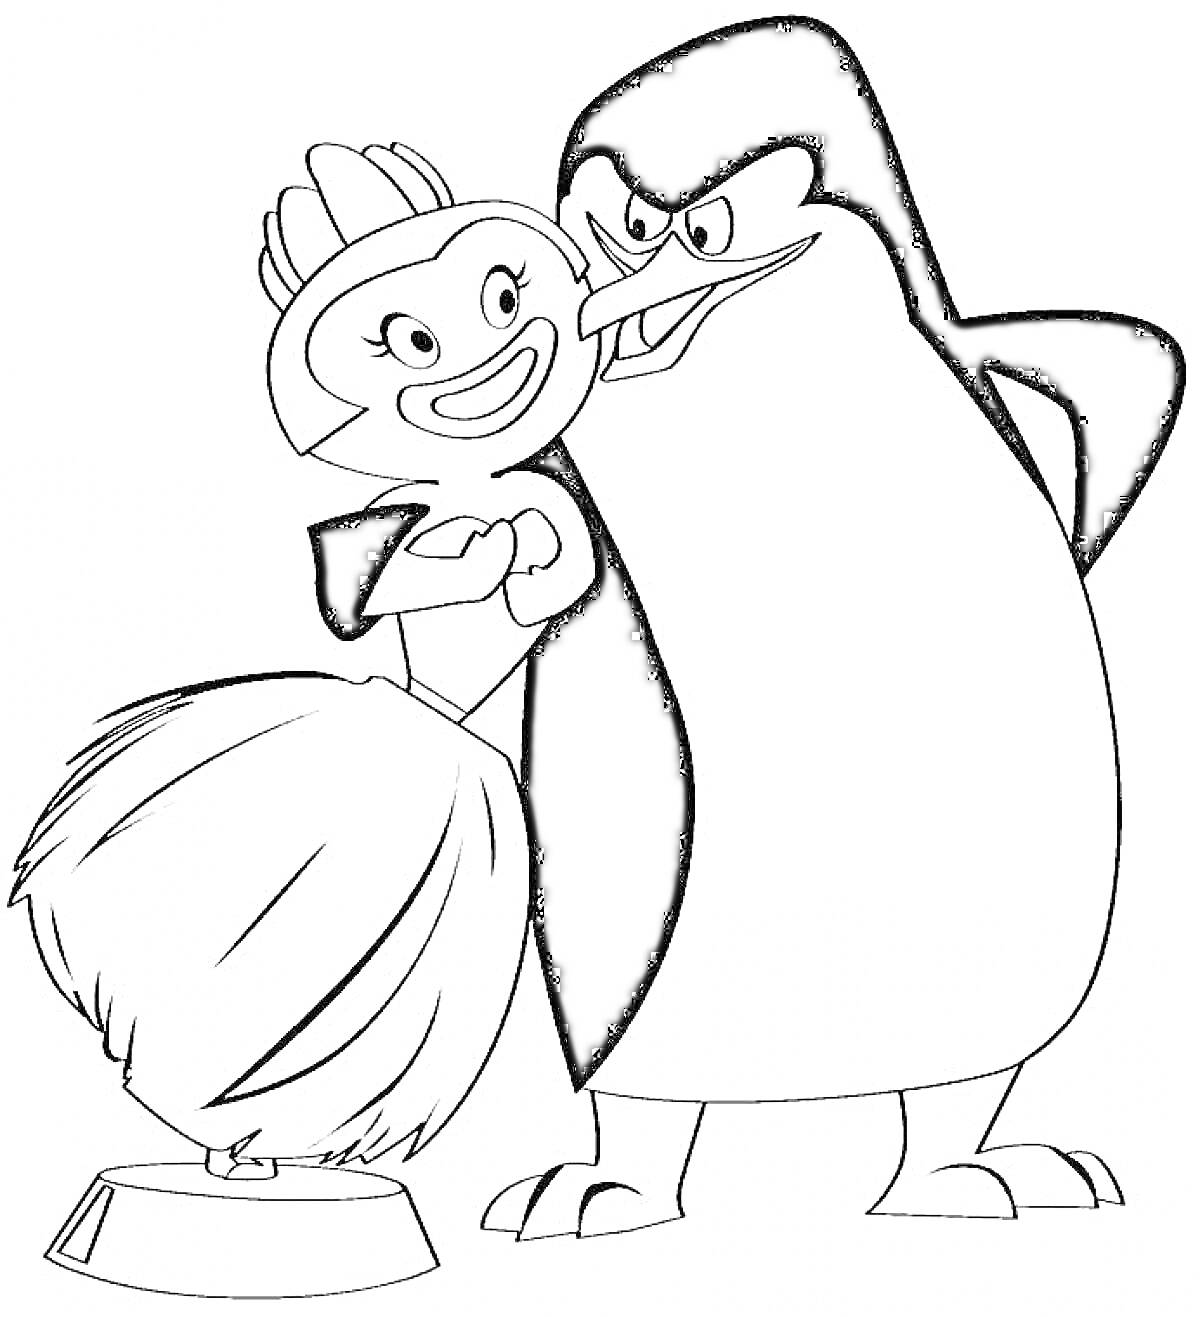 Раскраска Пингвин и танцовщица с помпоном на подставке